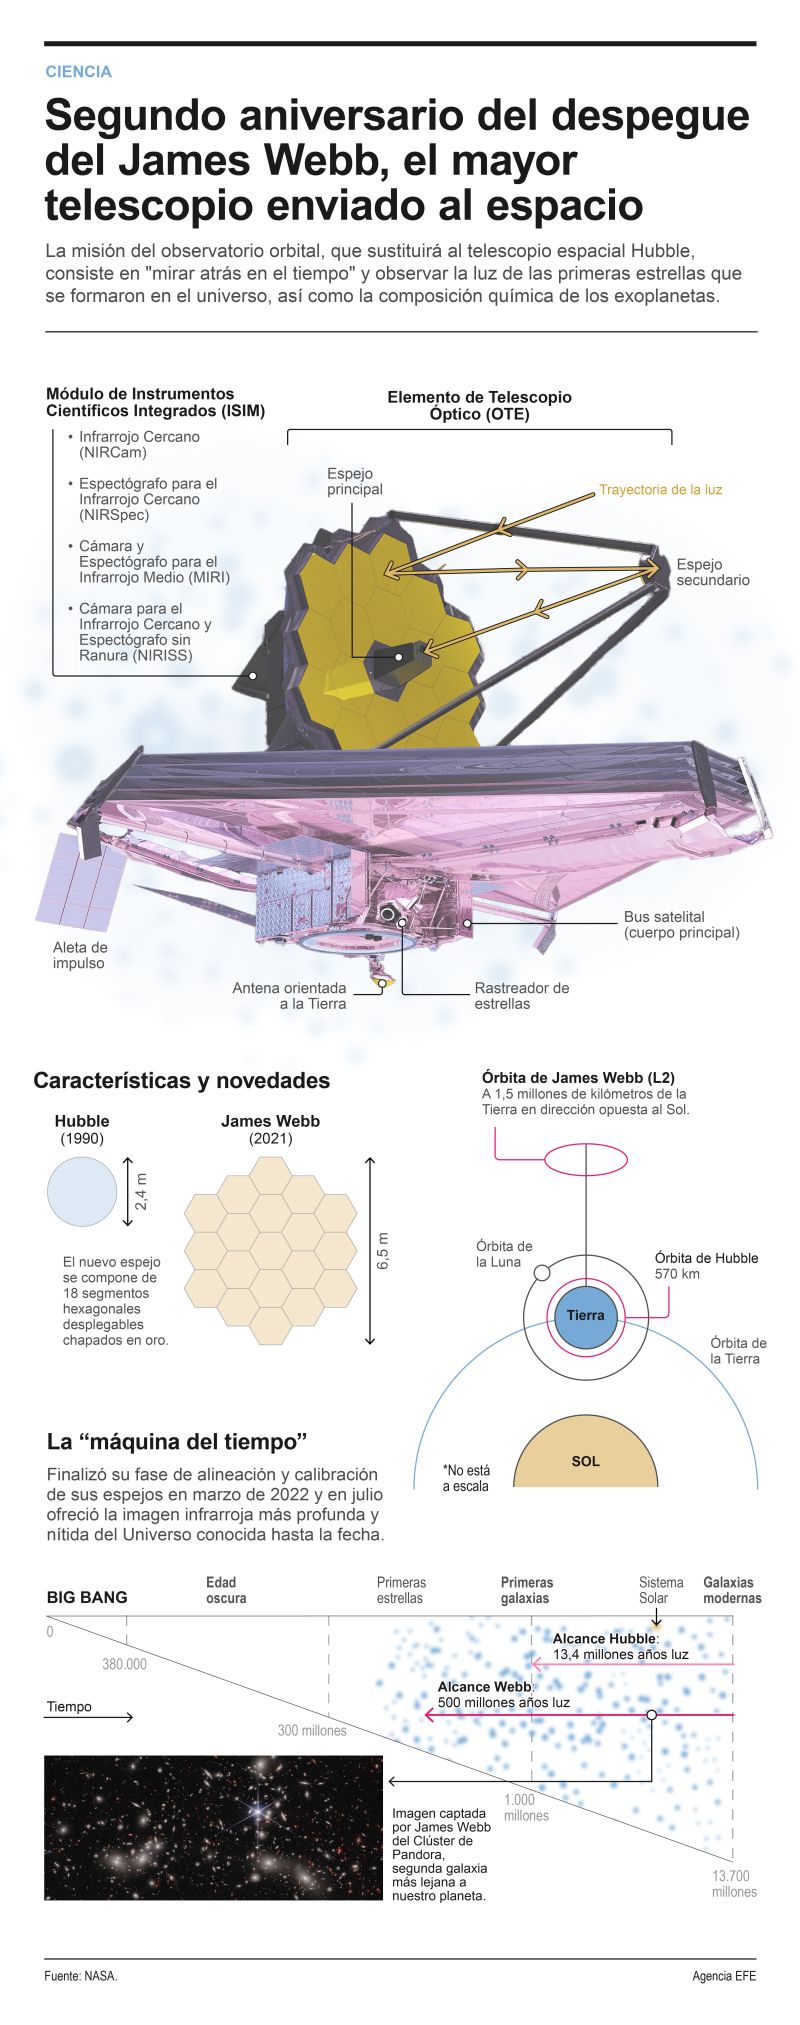 Segundo aniversario del lanzamiento del telescopio James Webb 01 221223